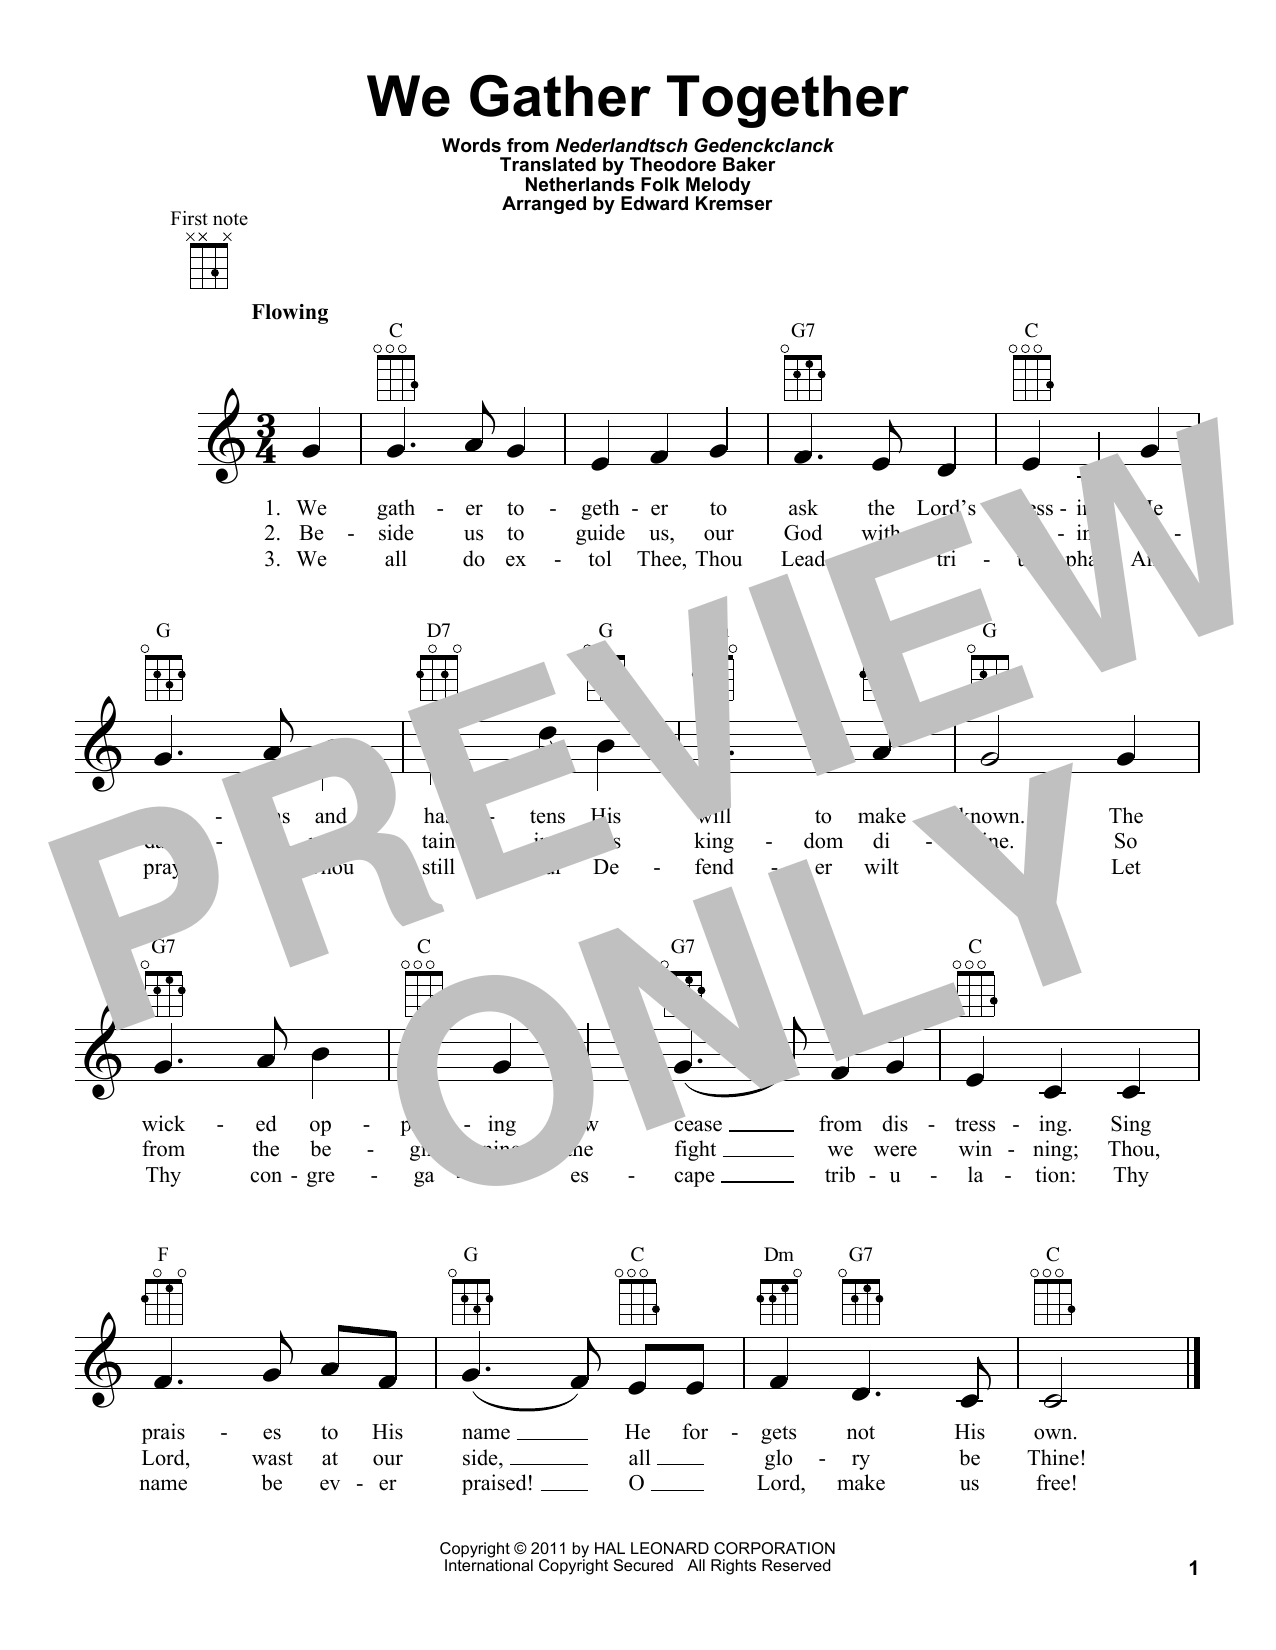 Netherlands Folk Hymn We Gather Together (arr. Eduard Kremser) Sheet Music Notes & Chords for Ukulele - Download or Print PDF